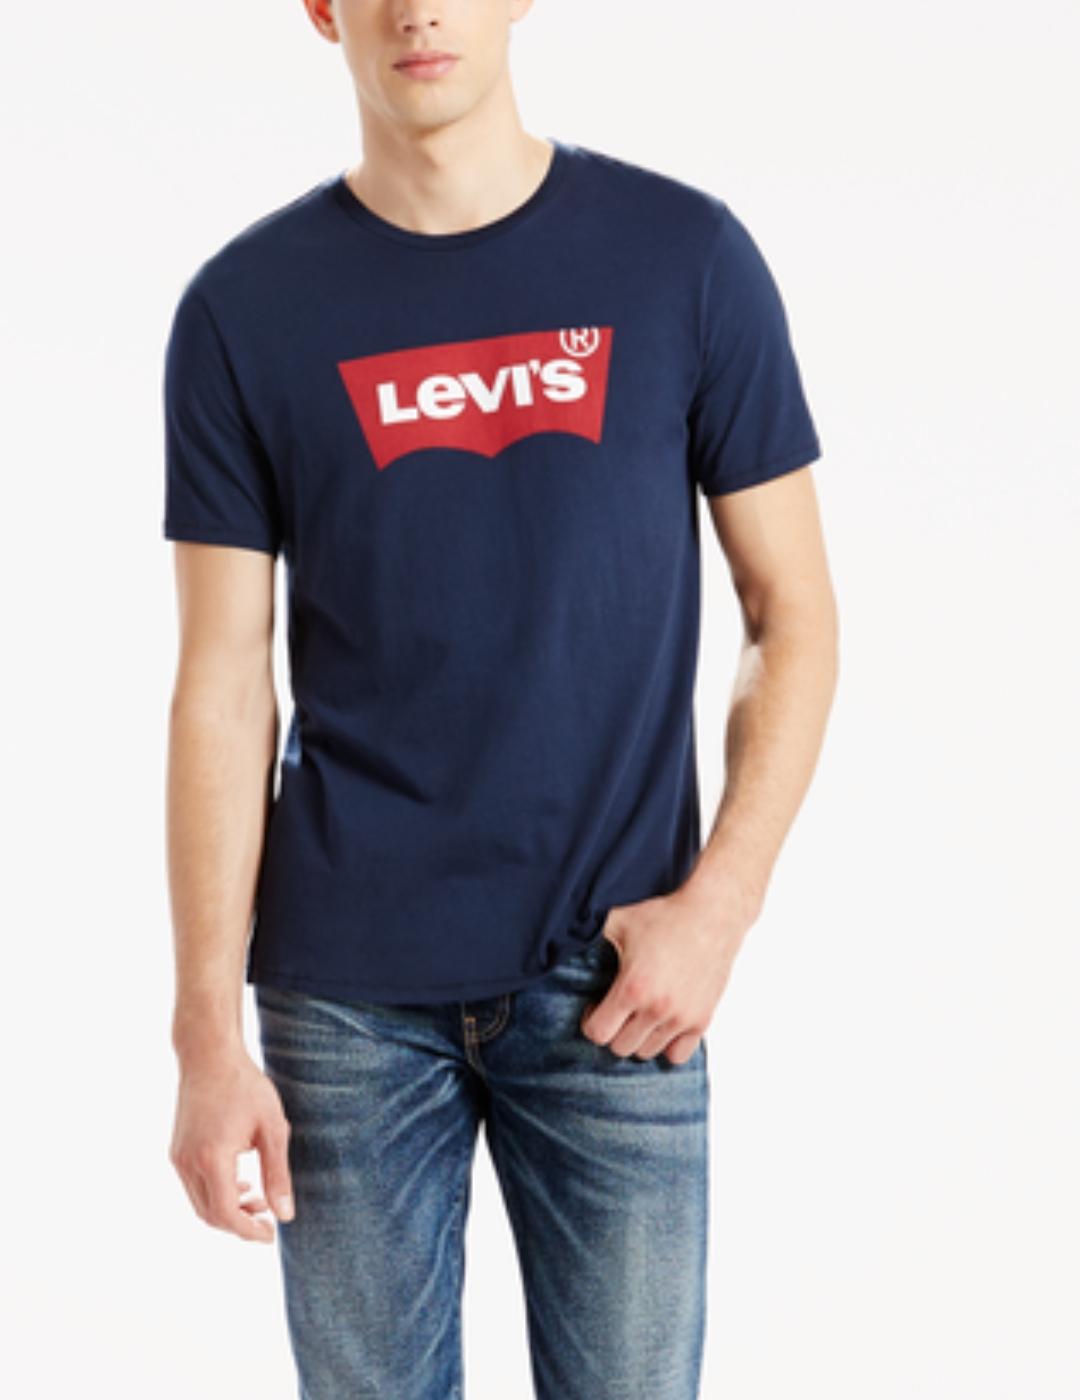 Camiseta levis logo marino manga corta hombre-ñ22